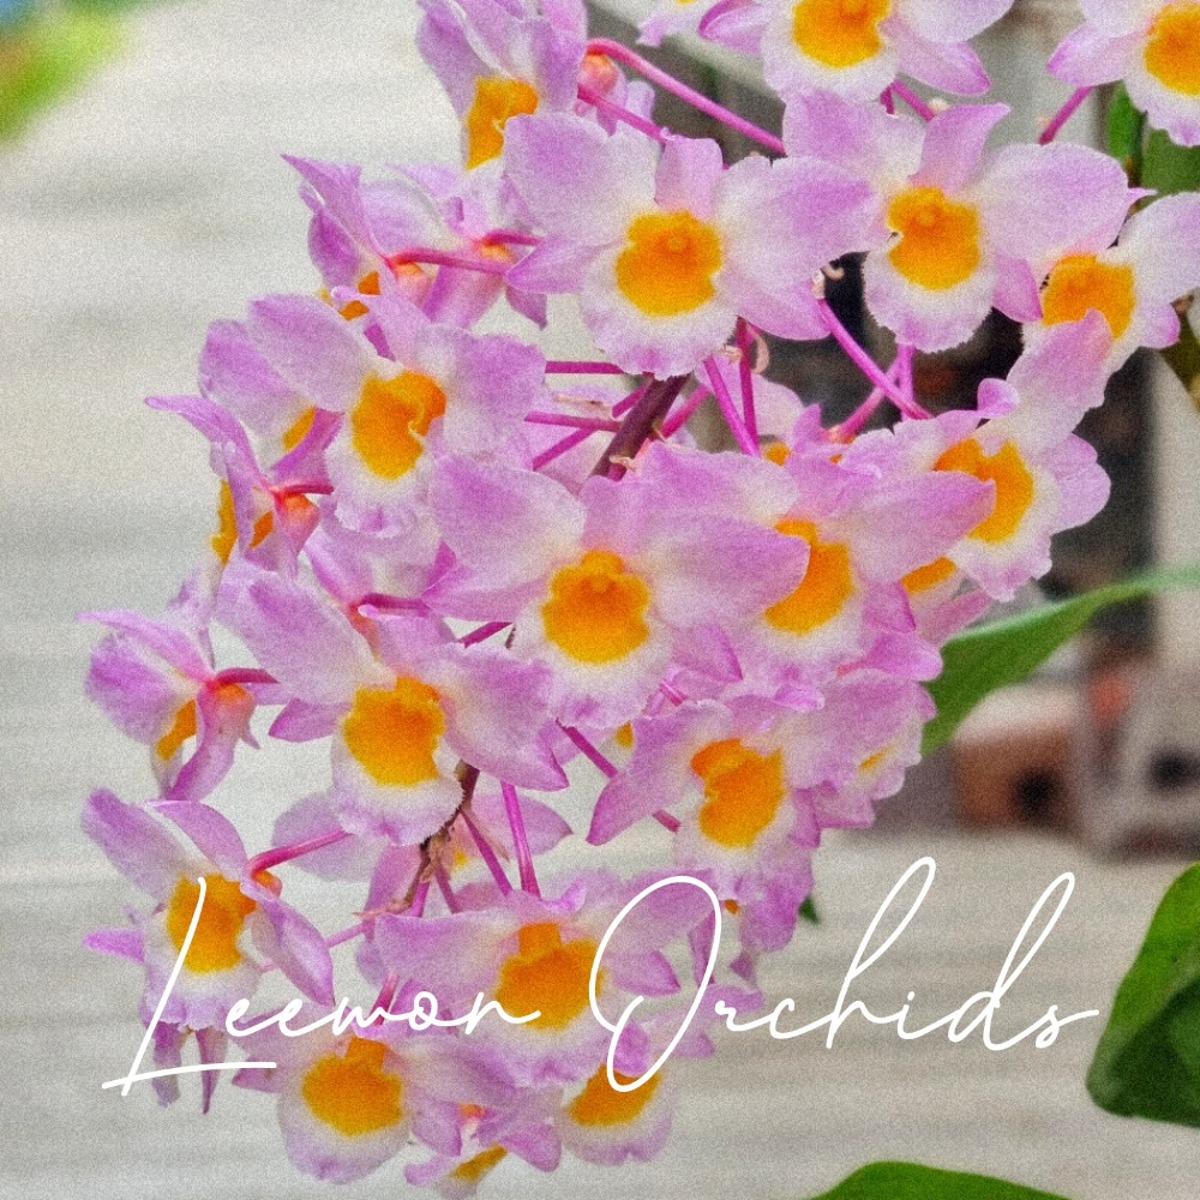 덴드로비움 아마빌리 Dendrobium amabile (온라인 한정재고: 1)